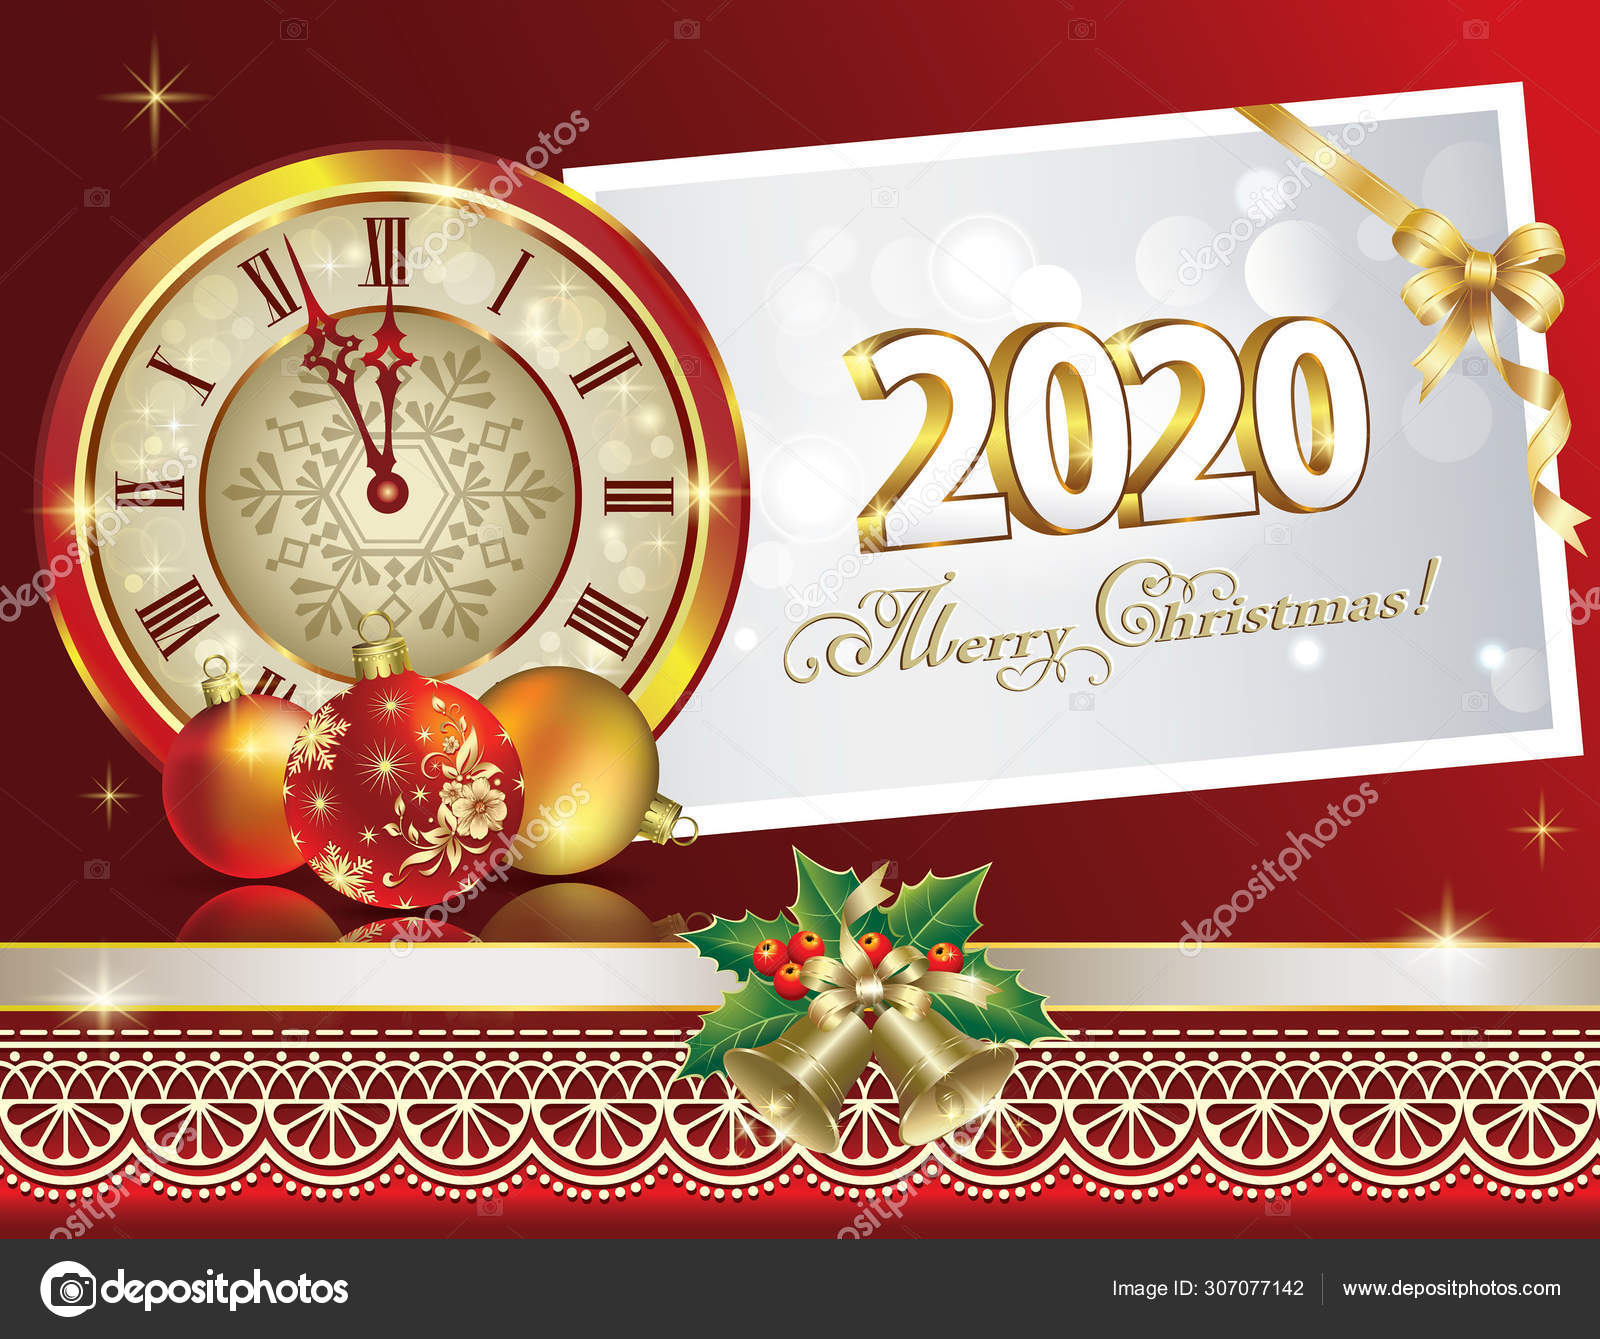 Joyeux Noel Et Bonne Année 2020 Illustration De Vecteur